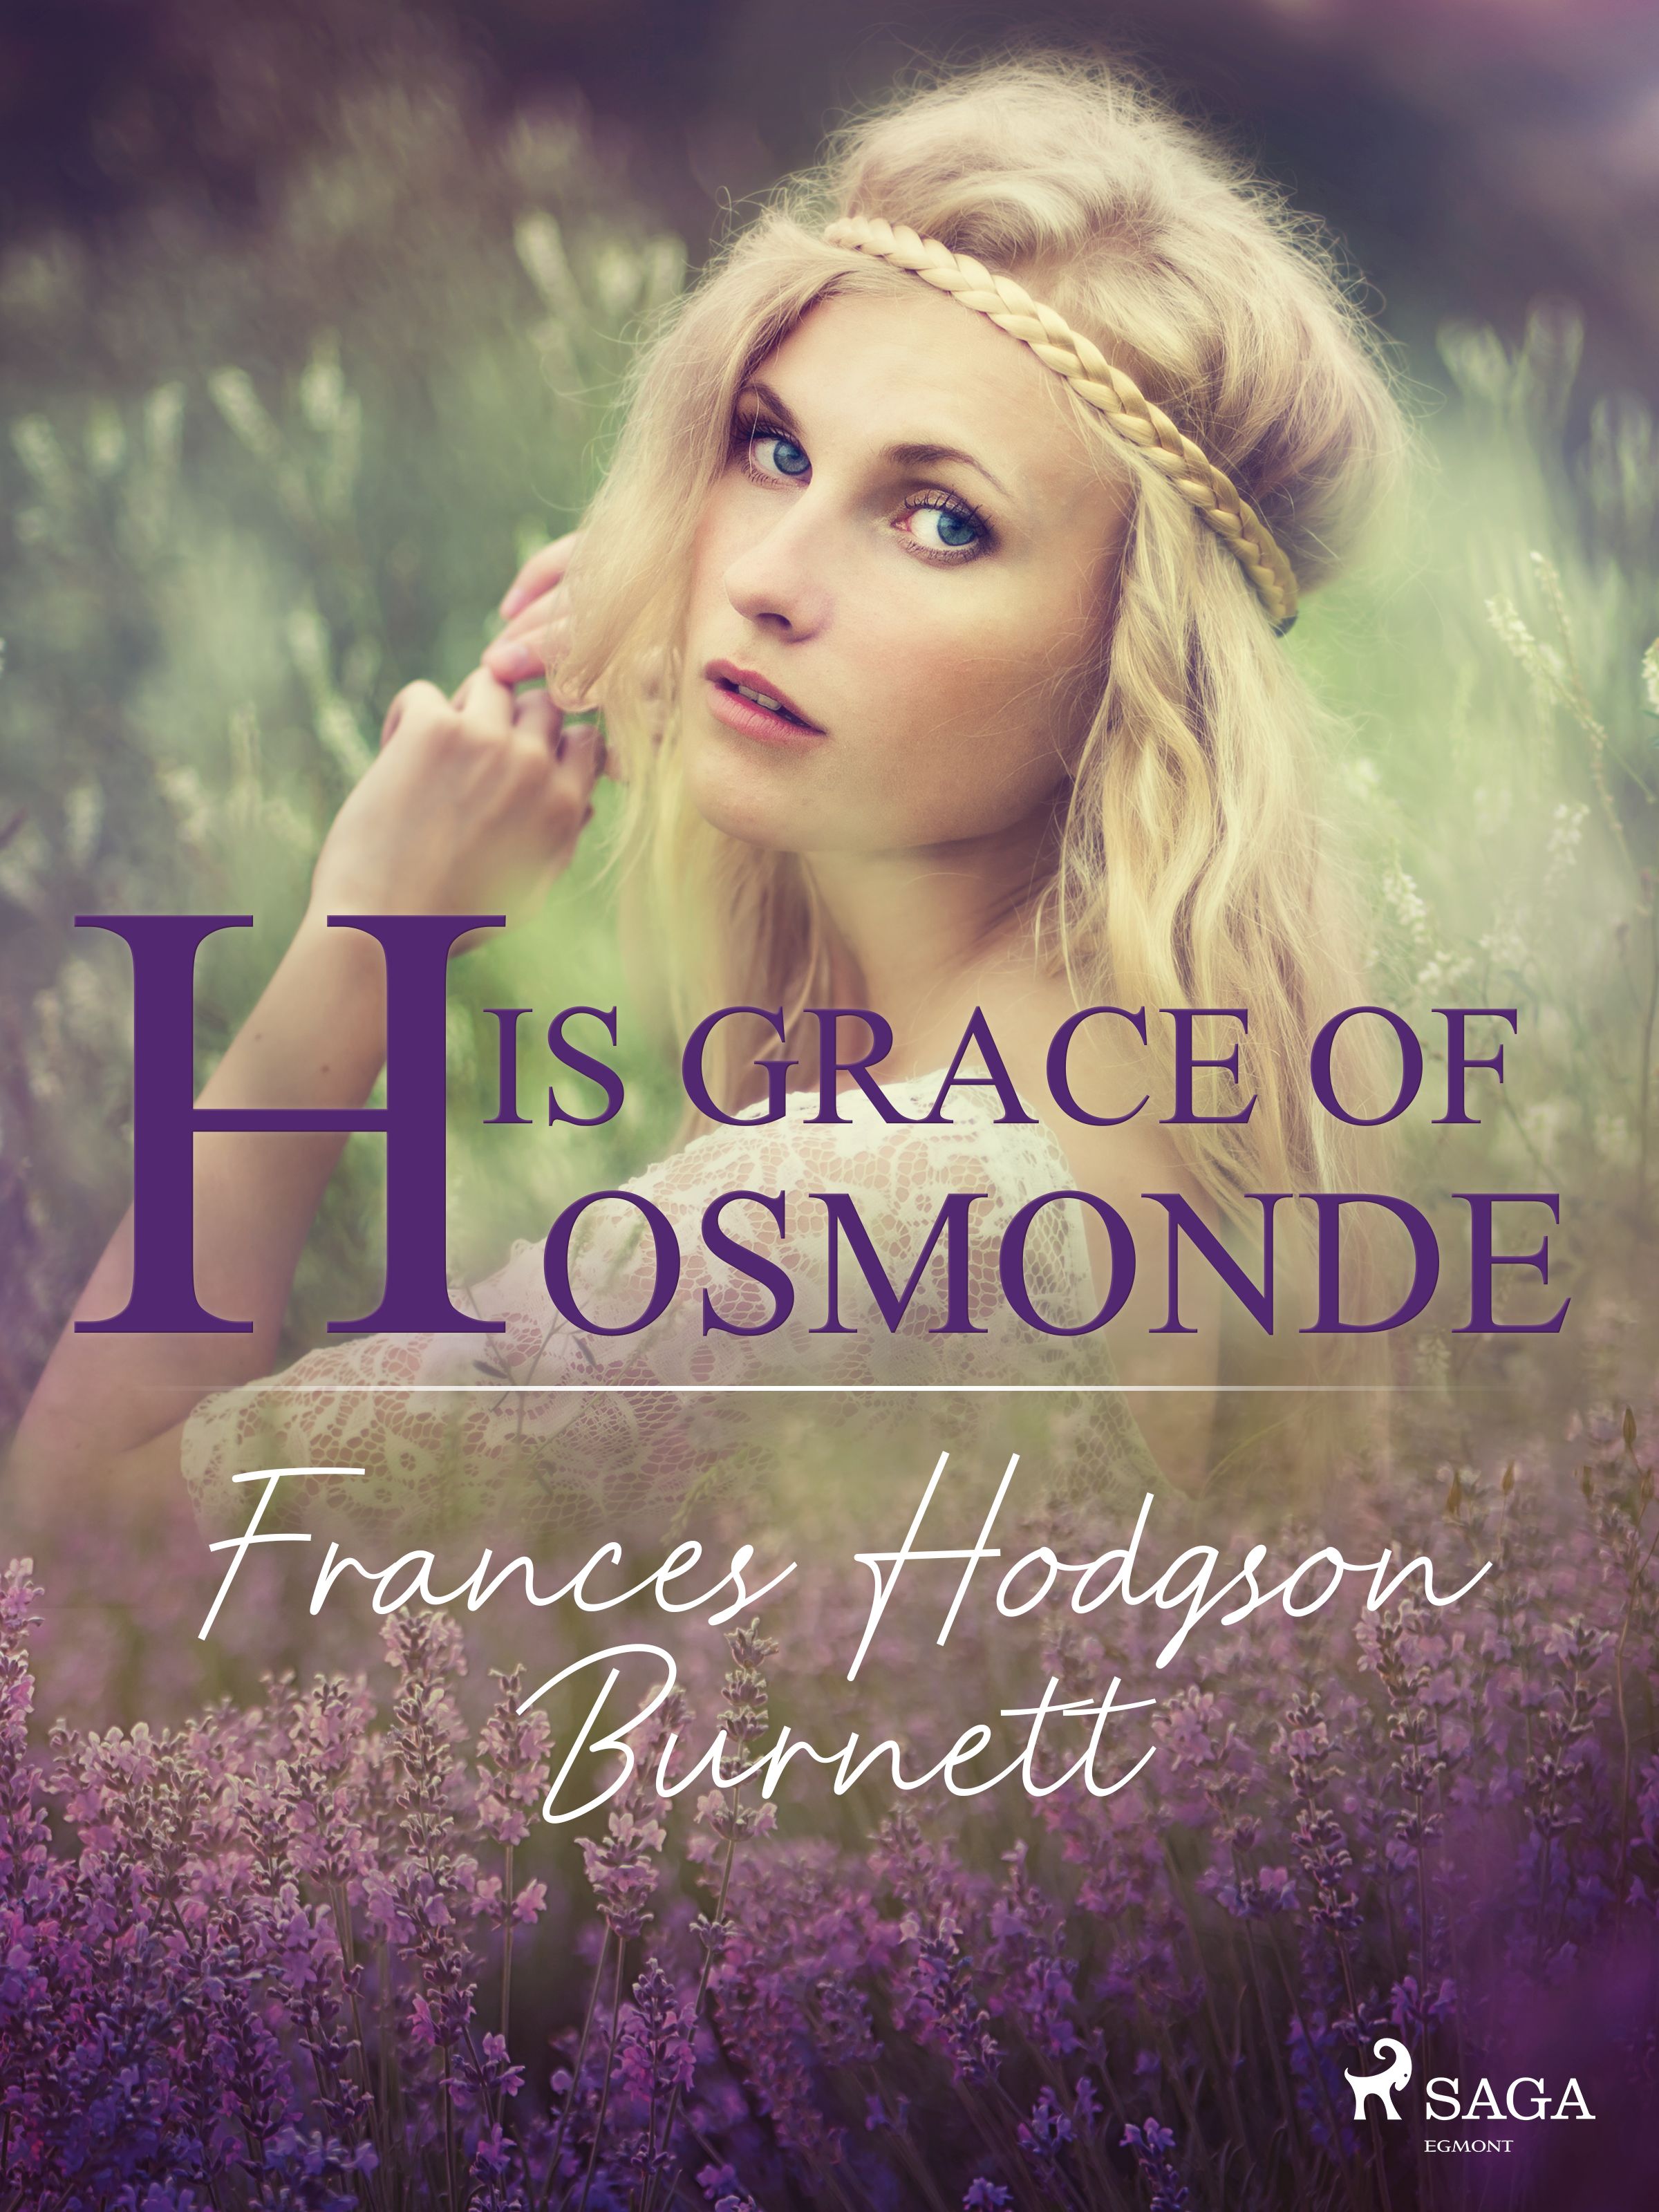 His Grace of Osmonde, e-bok av Frances Hodgson Burnett